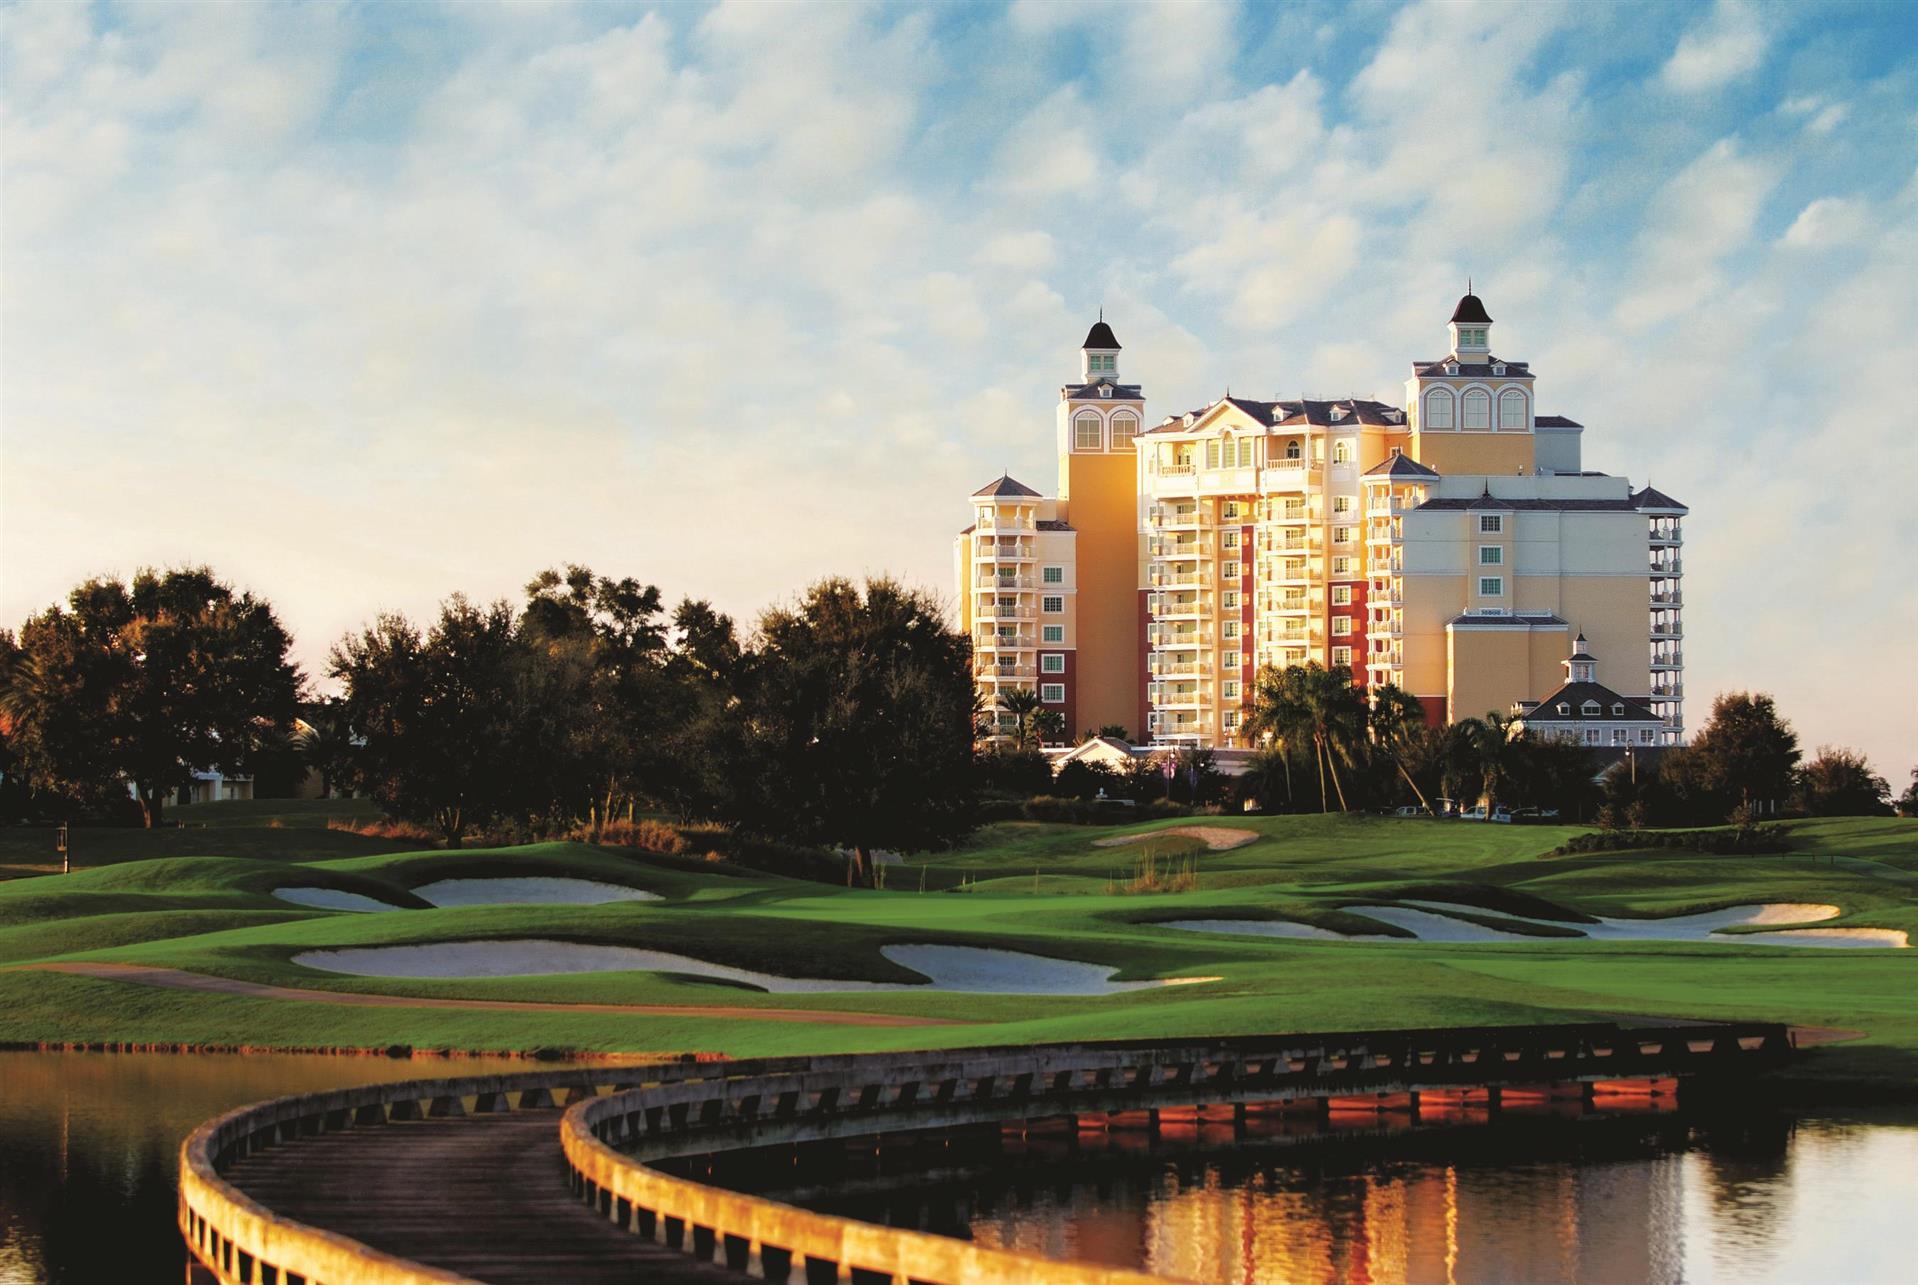 Reunion Resort & Golf Club in Kissimmee, FL